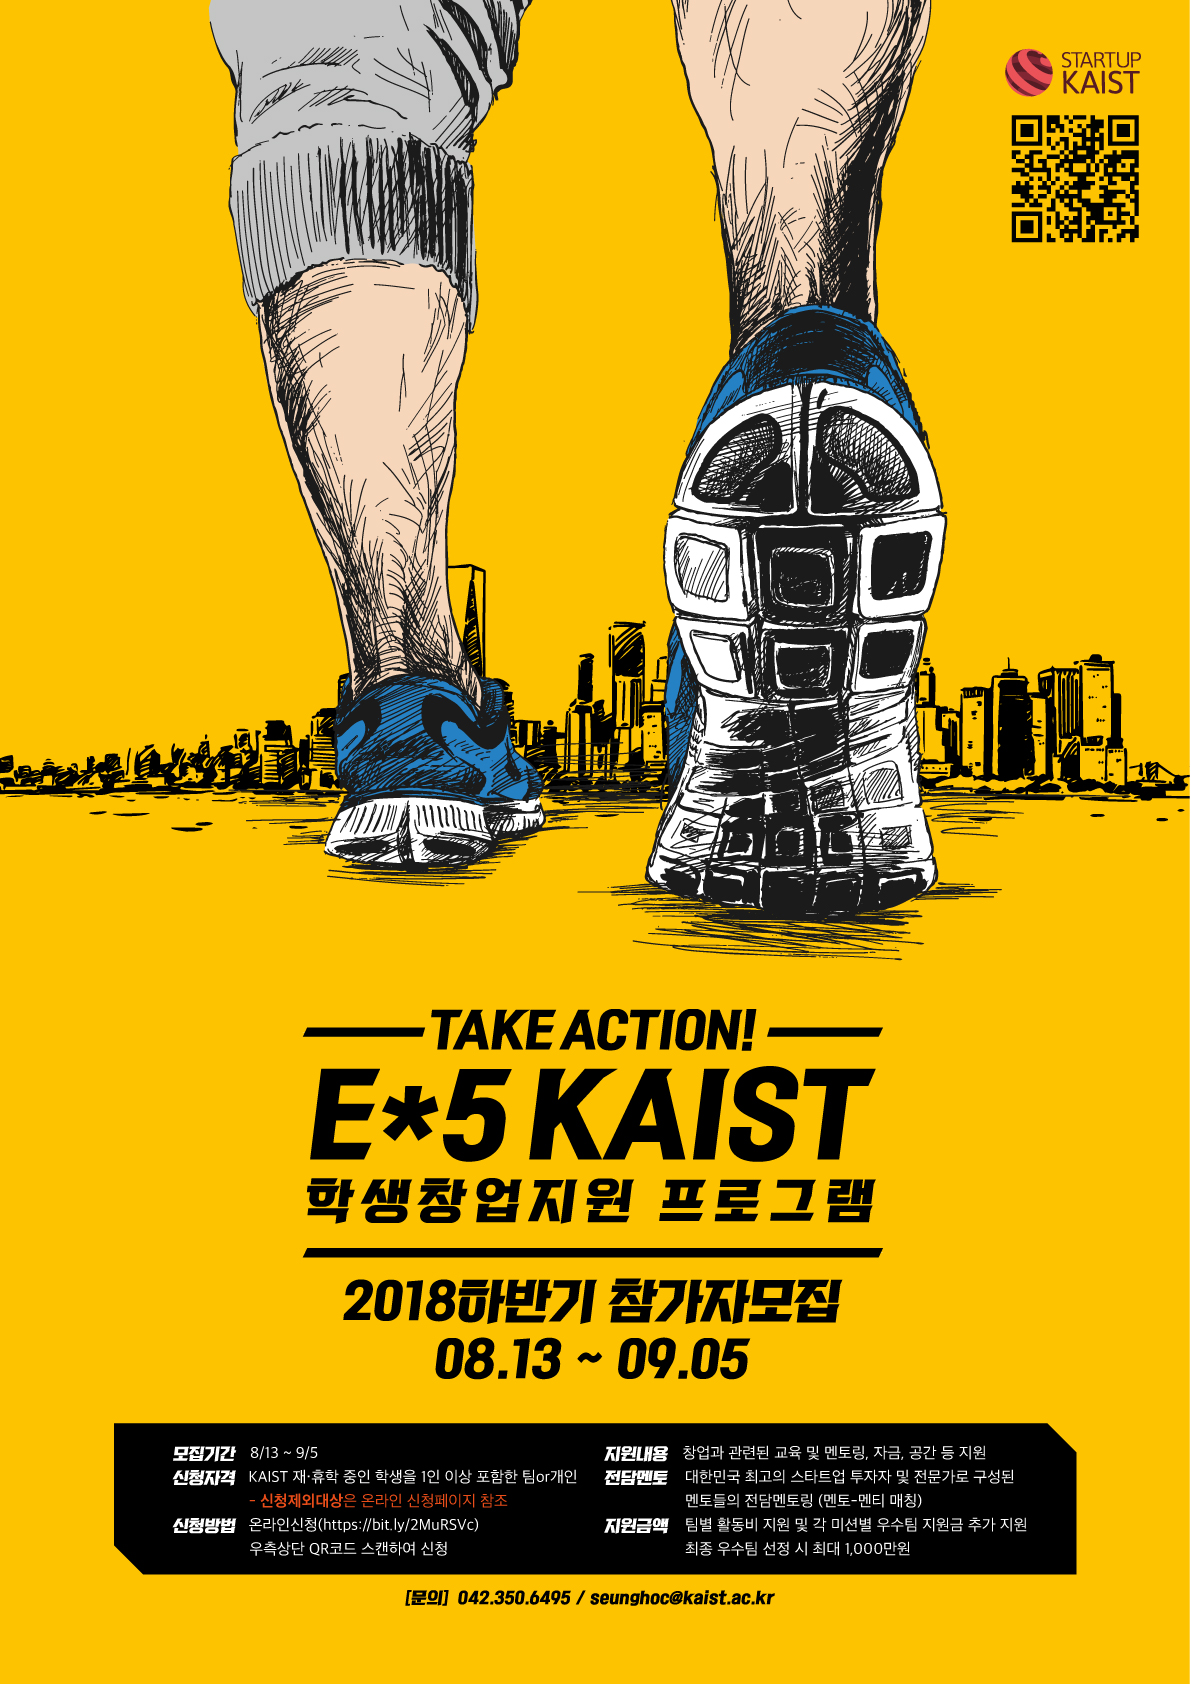 E*5 KAIST 참가팀 모집 (2018 하반기)